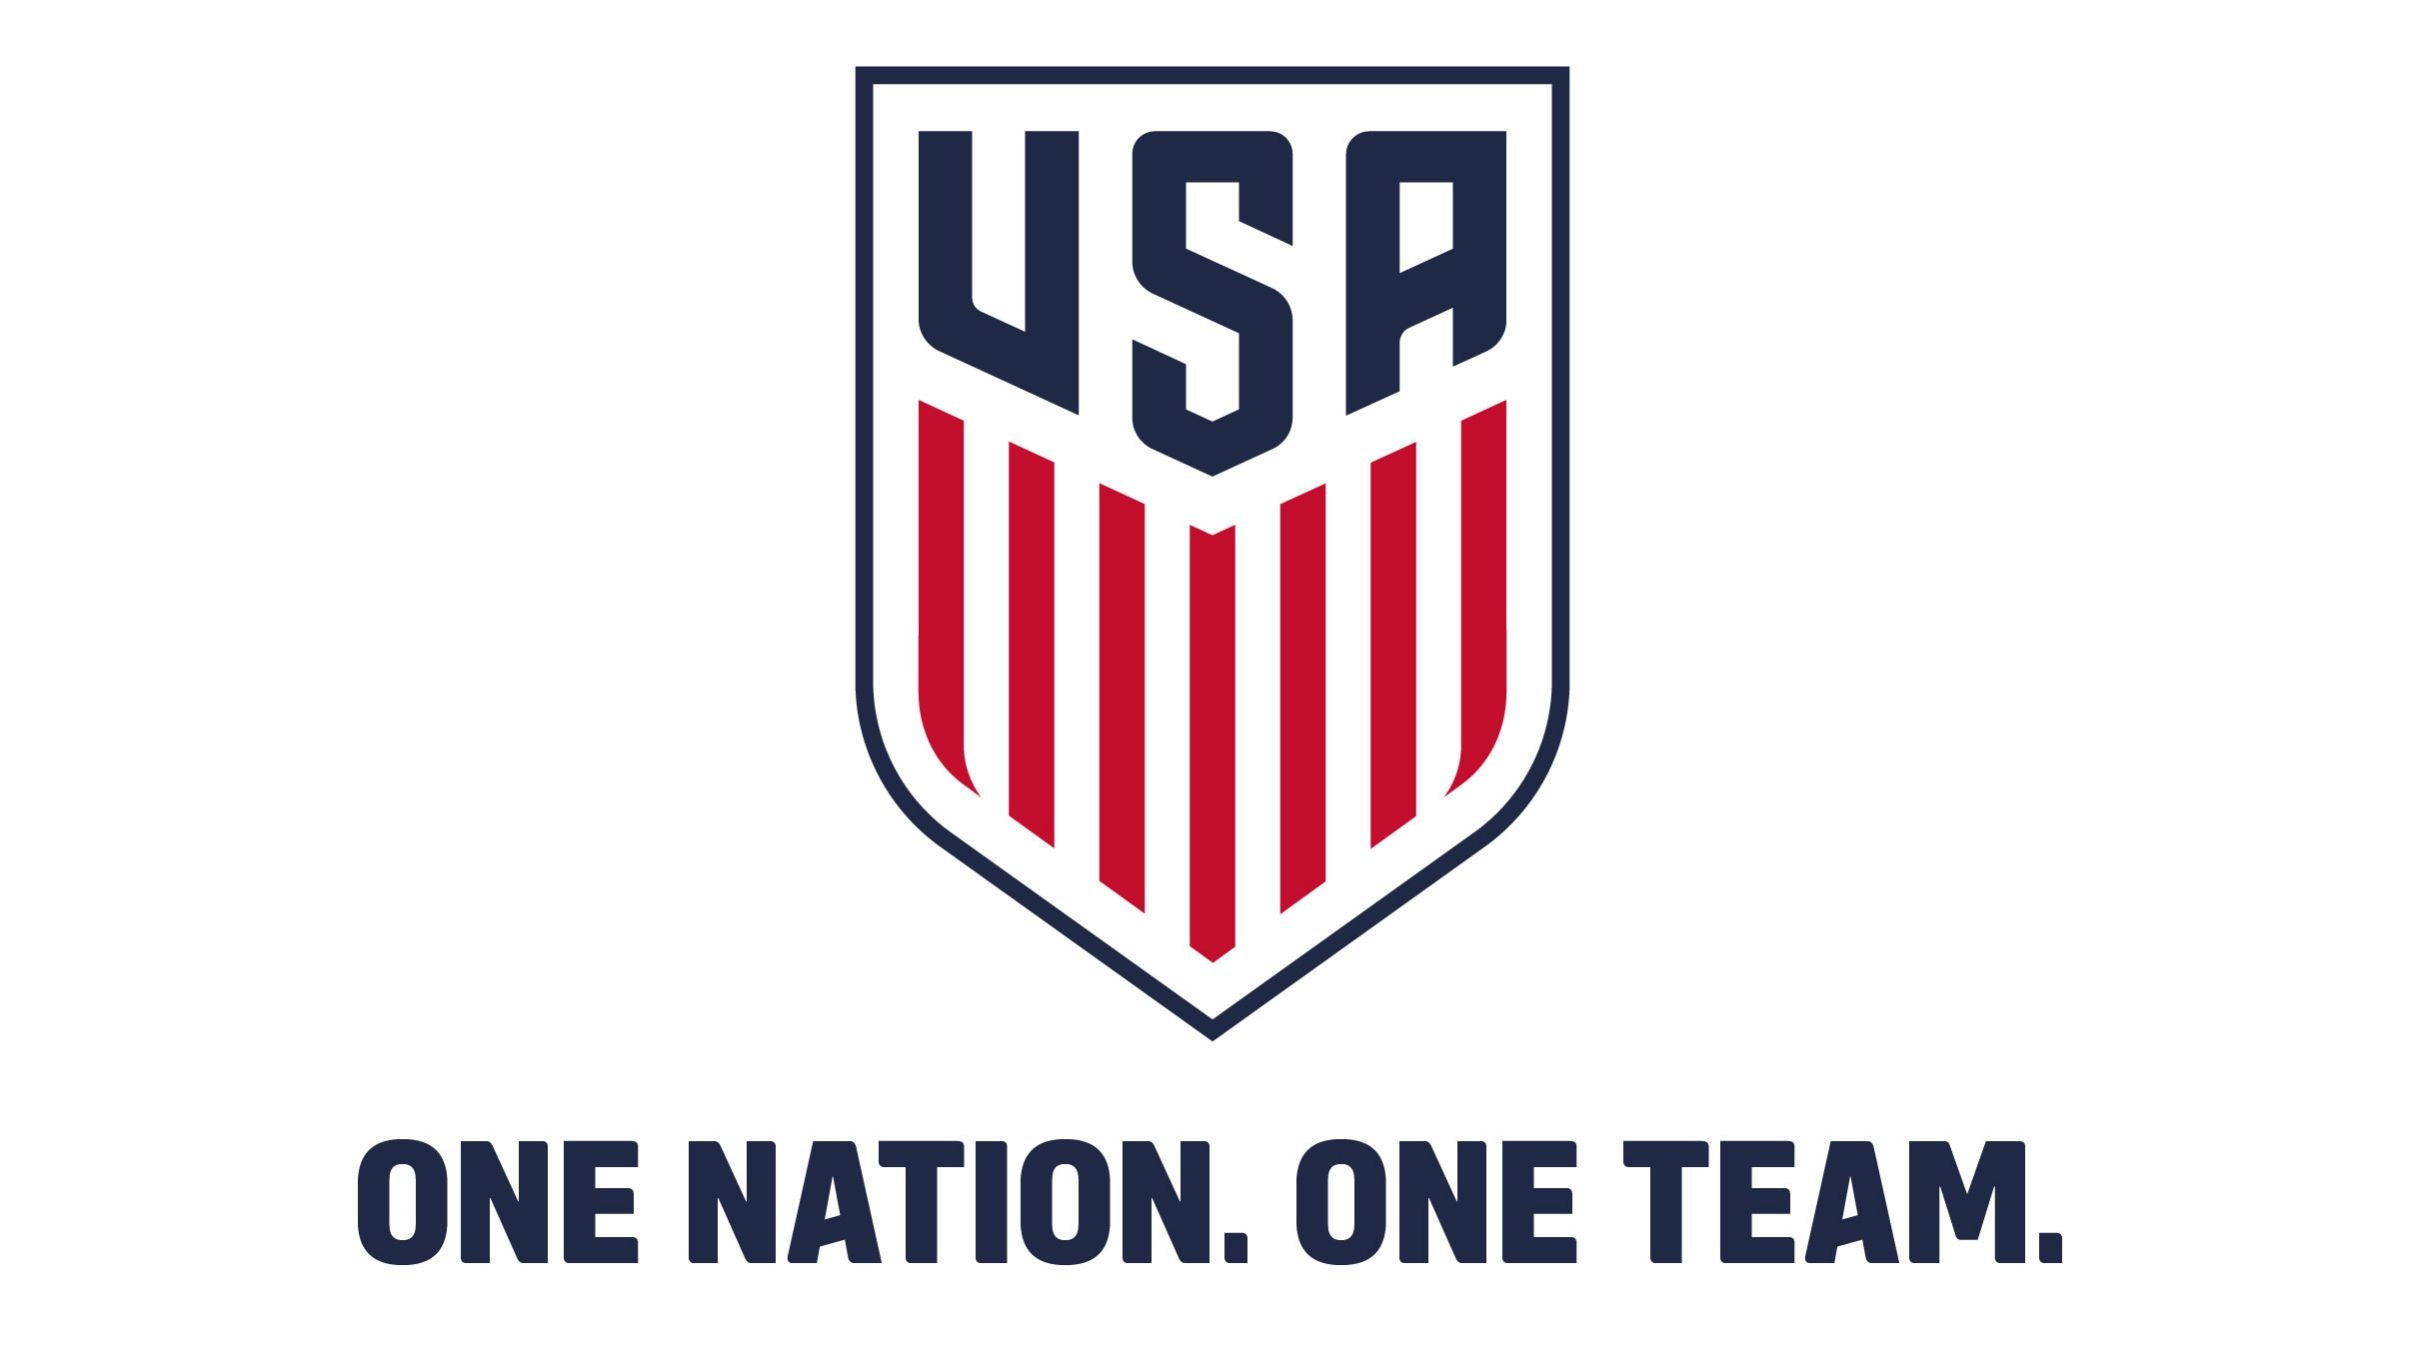 U.S. Men's National Team vs Slovenia in San Antonio promo photo for Fan Club presale offer code